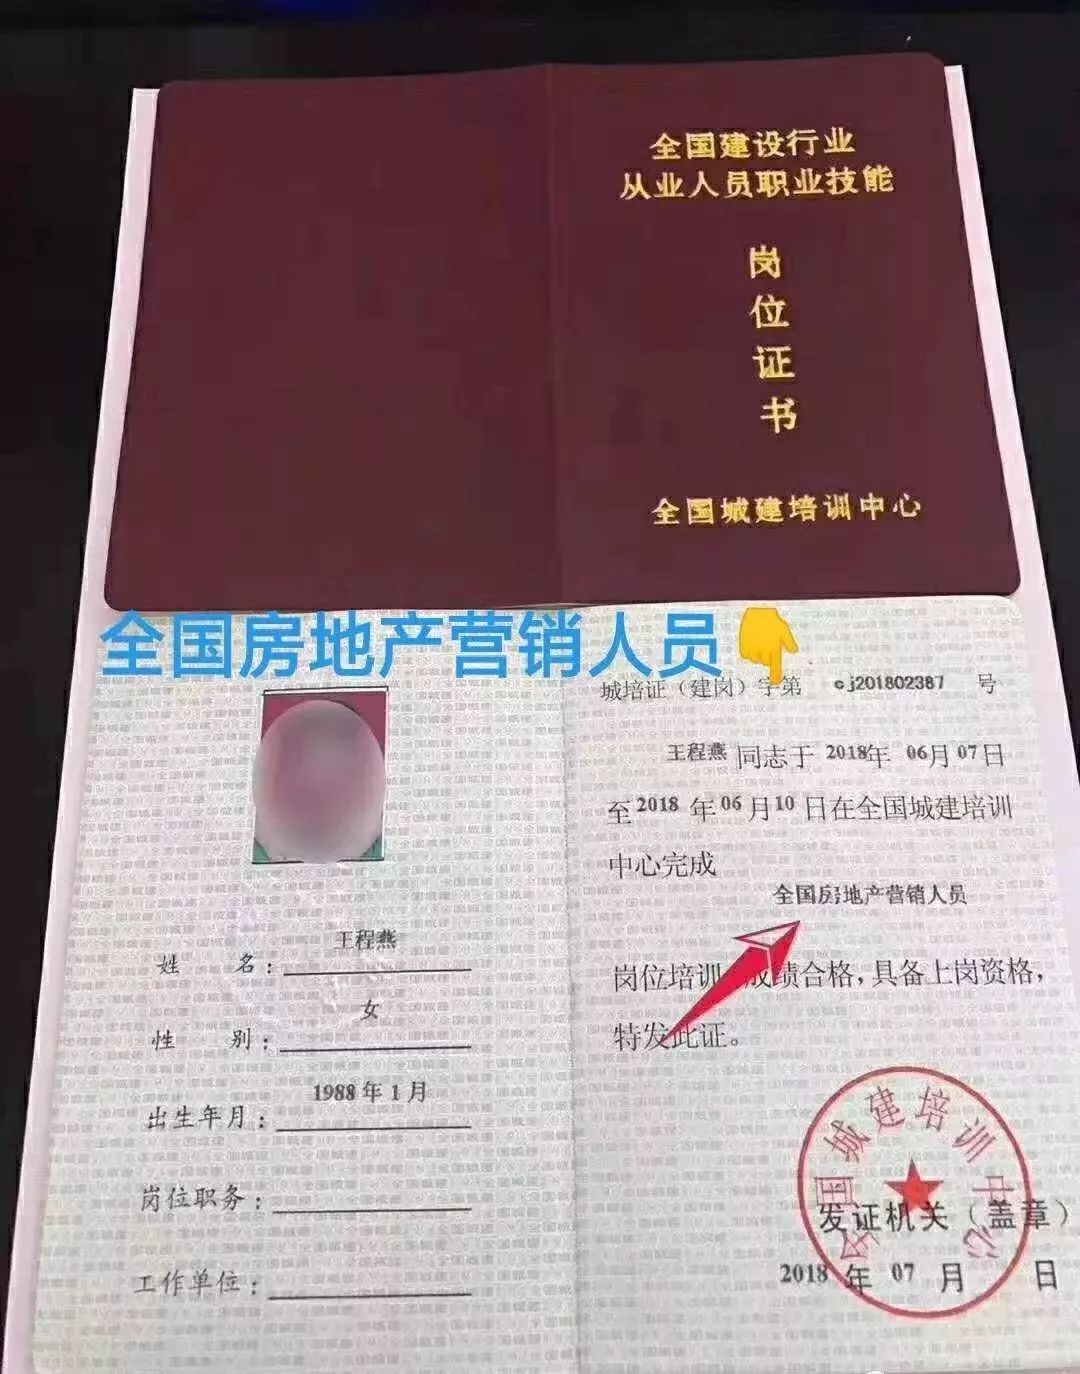 上海房地产经纪人协会(上海房地产经纪人协会网)